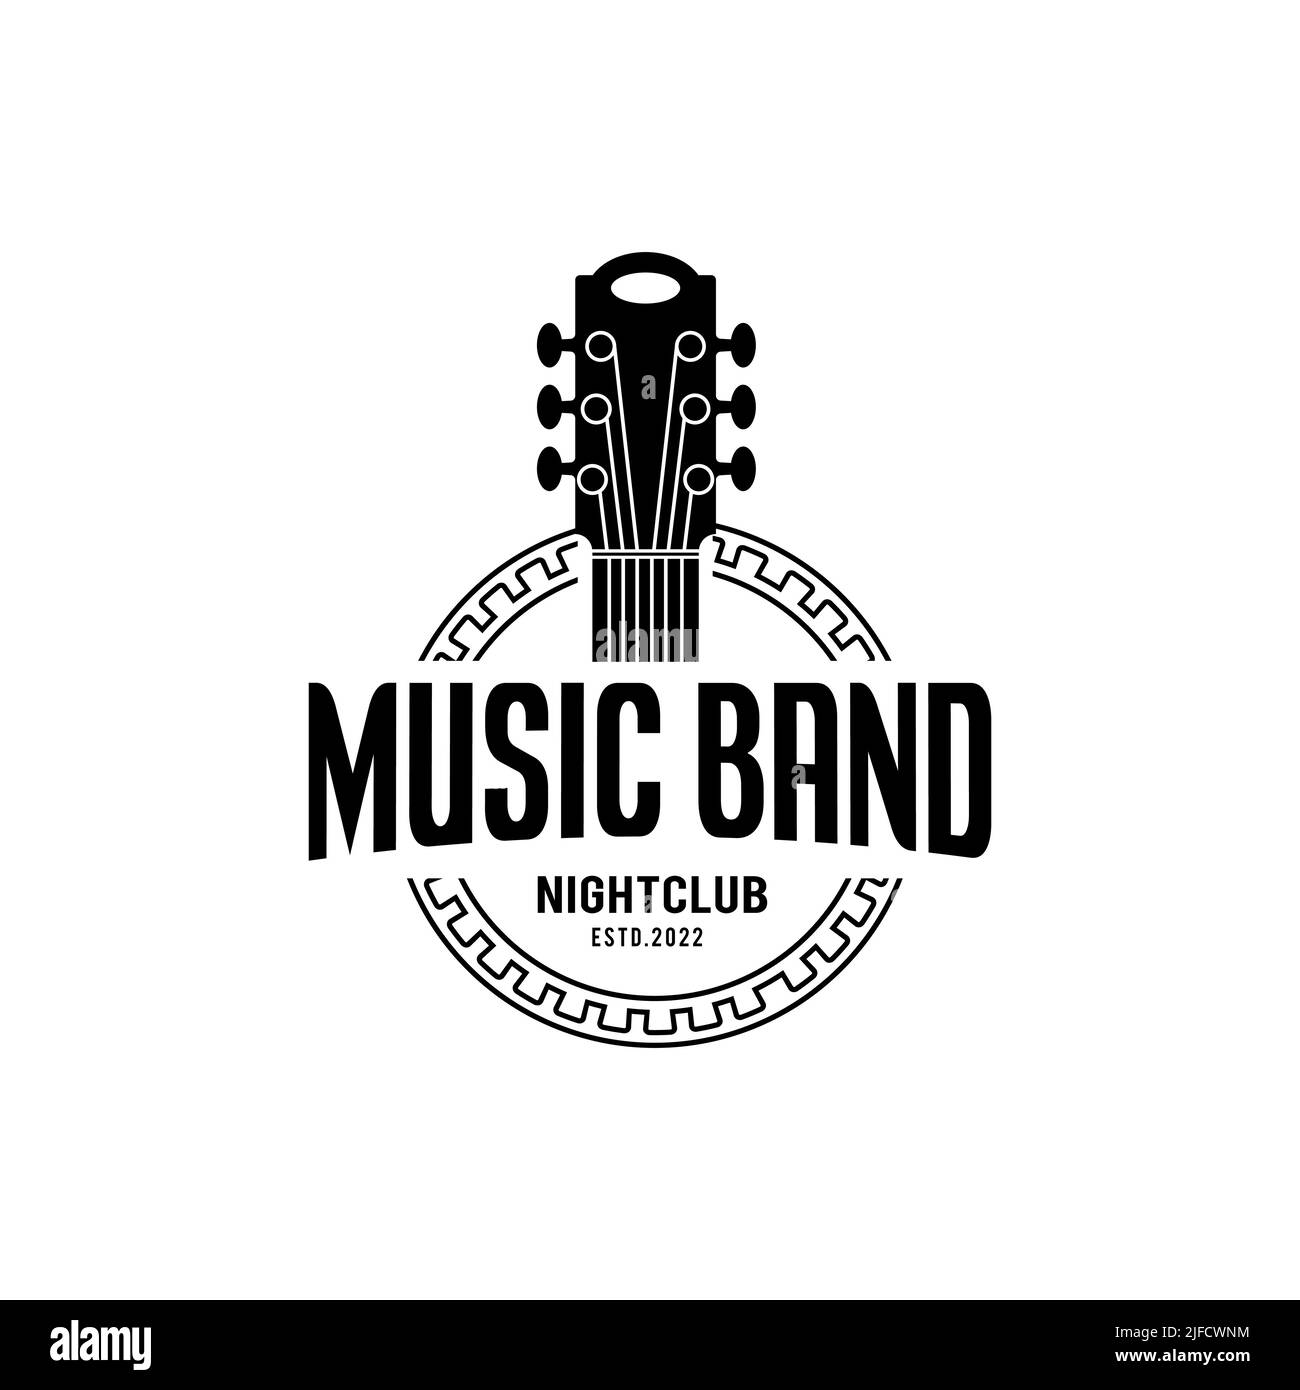 Logotipo de música clásica y banda, guitarra, logotipo vintage de club de música, diseño de logotipo de pancarta de cinta retro Ilustración del Vector